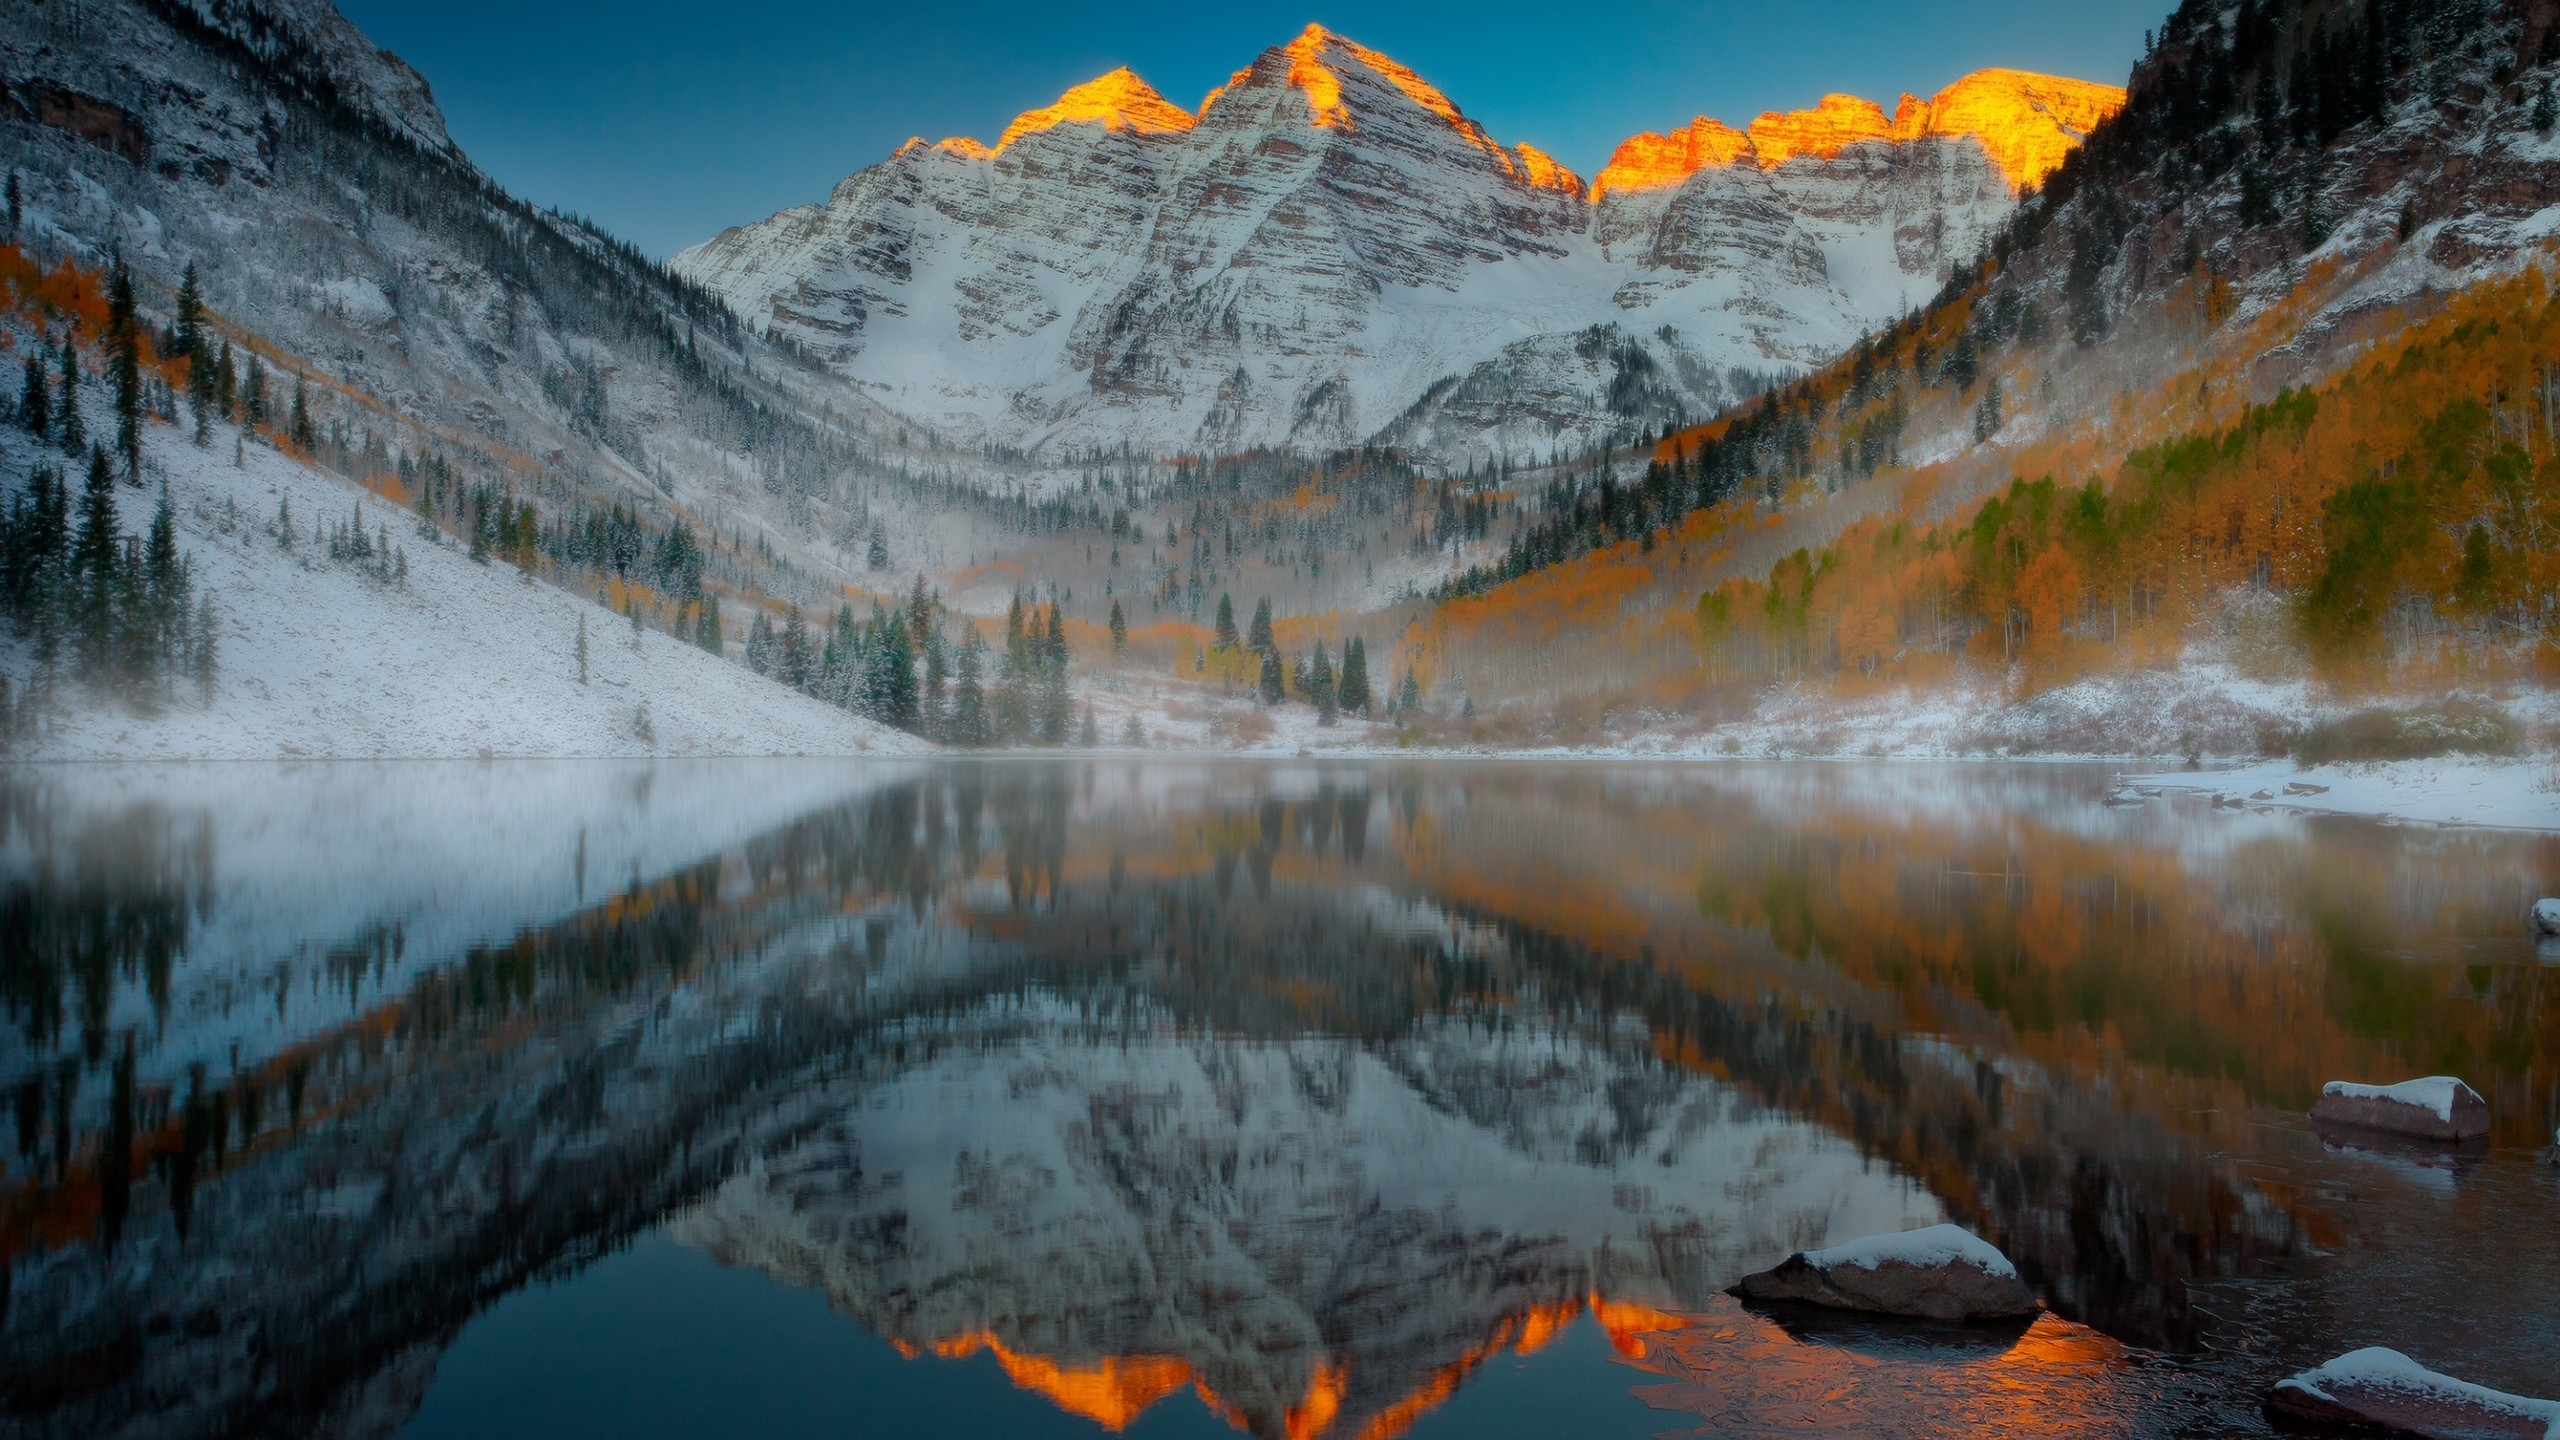 Aspen Mountain Colorado for 2560x1440 HDTV resolution